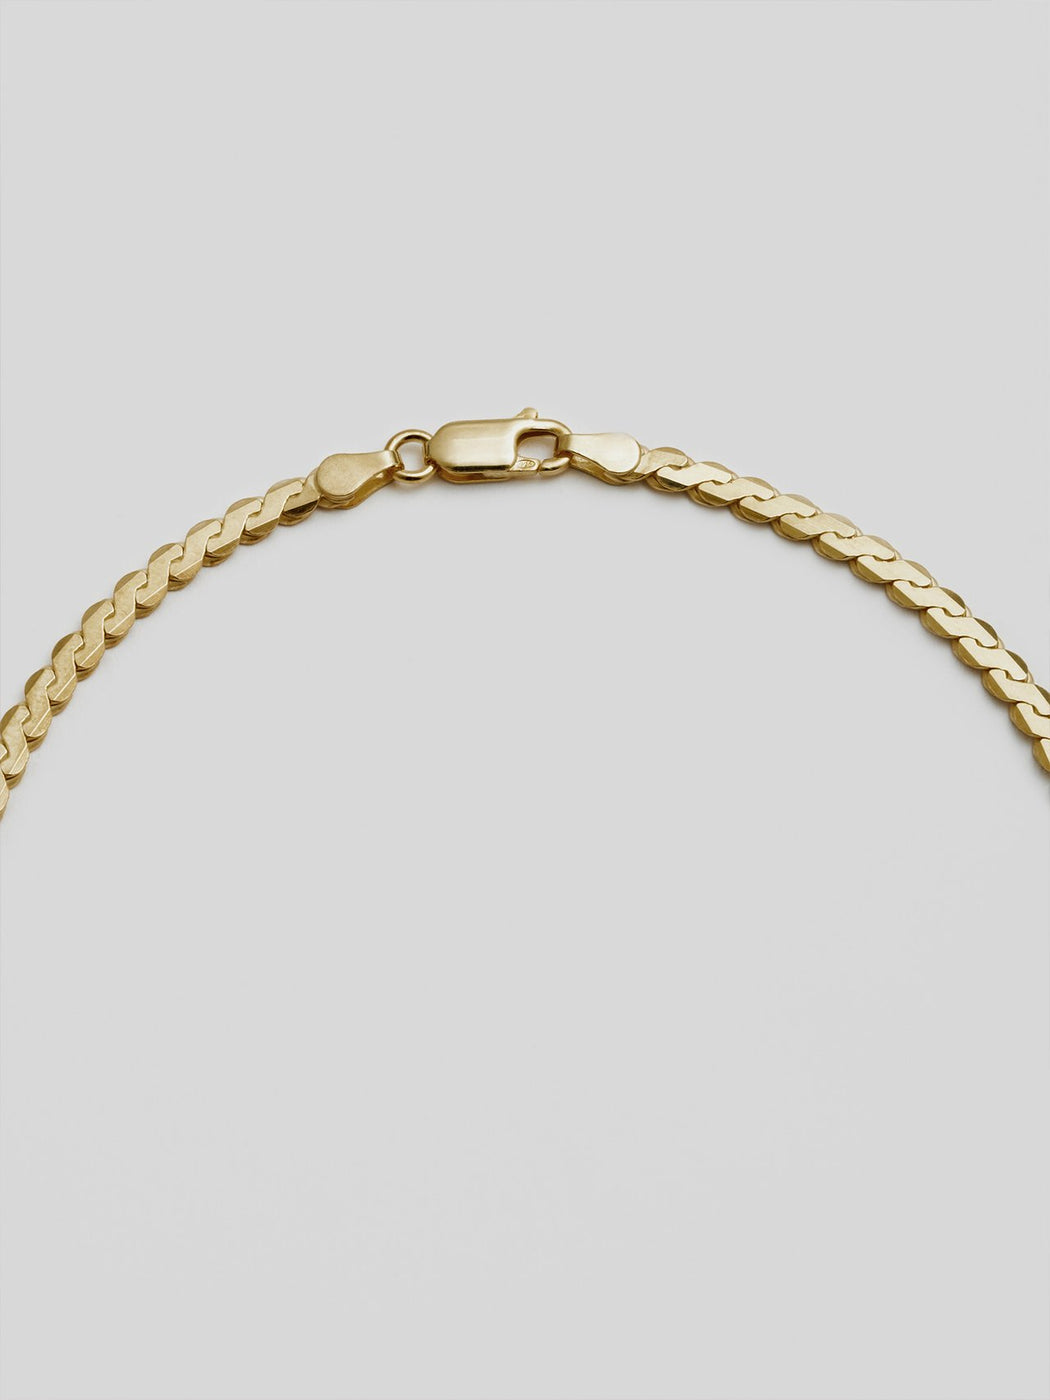 Loren Stewart :: Necklace, Serpentine Chain 18"